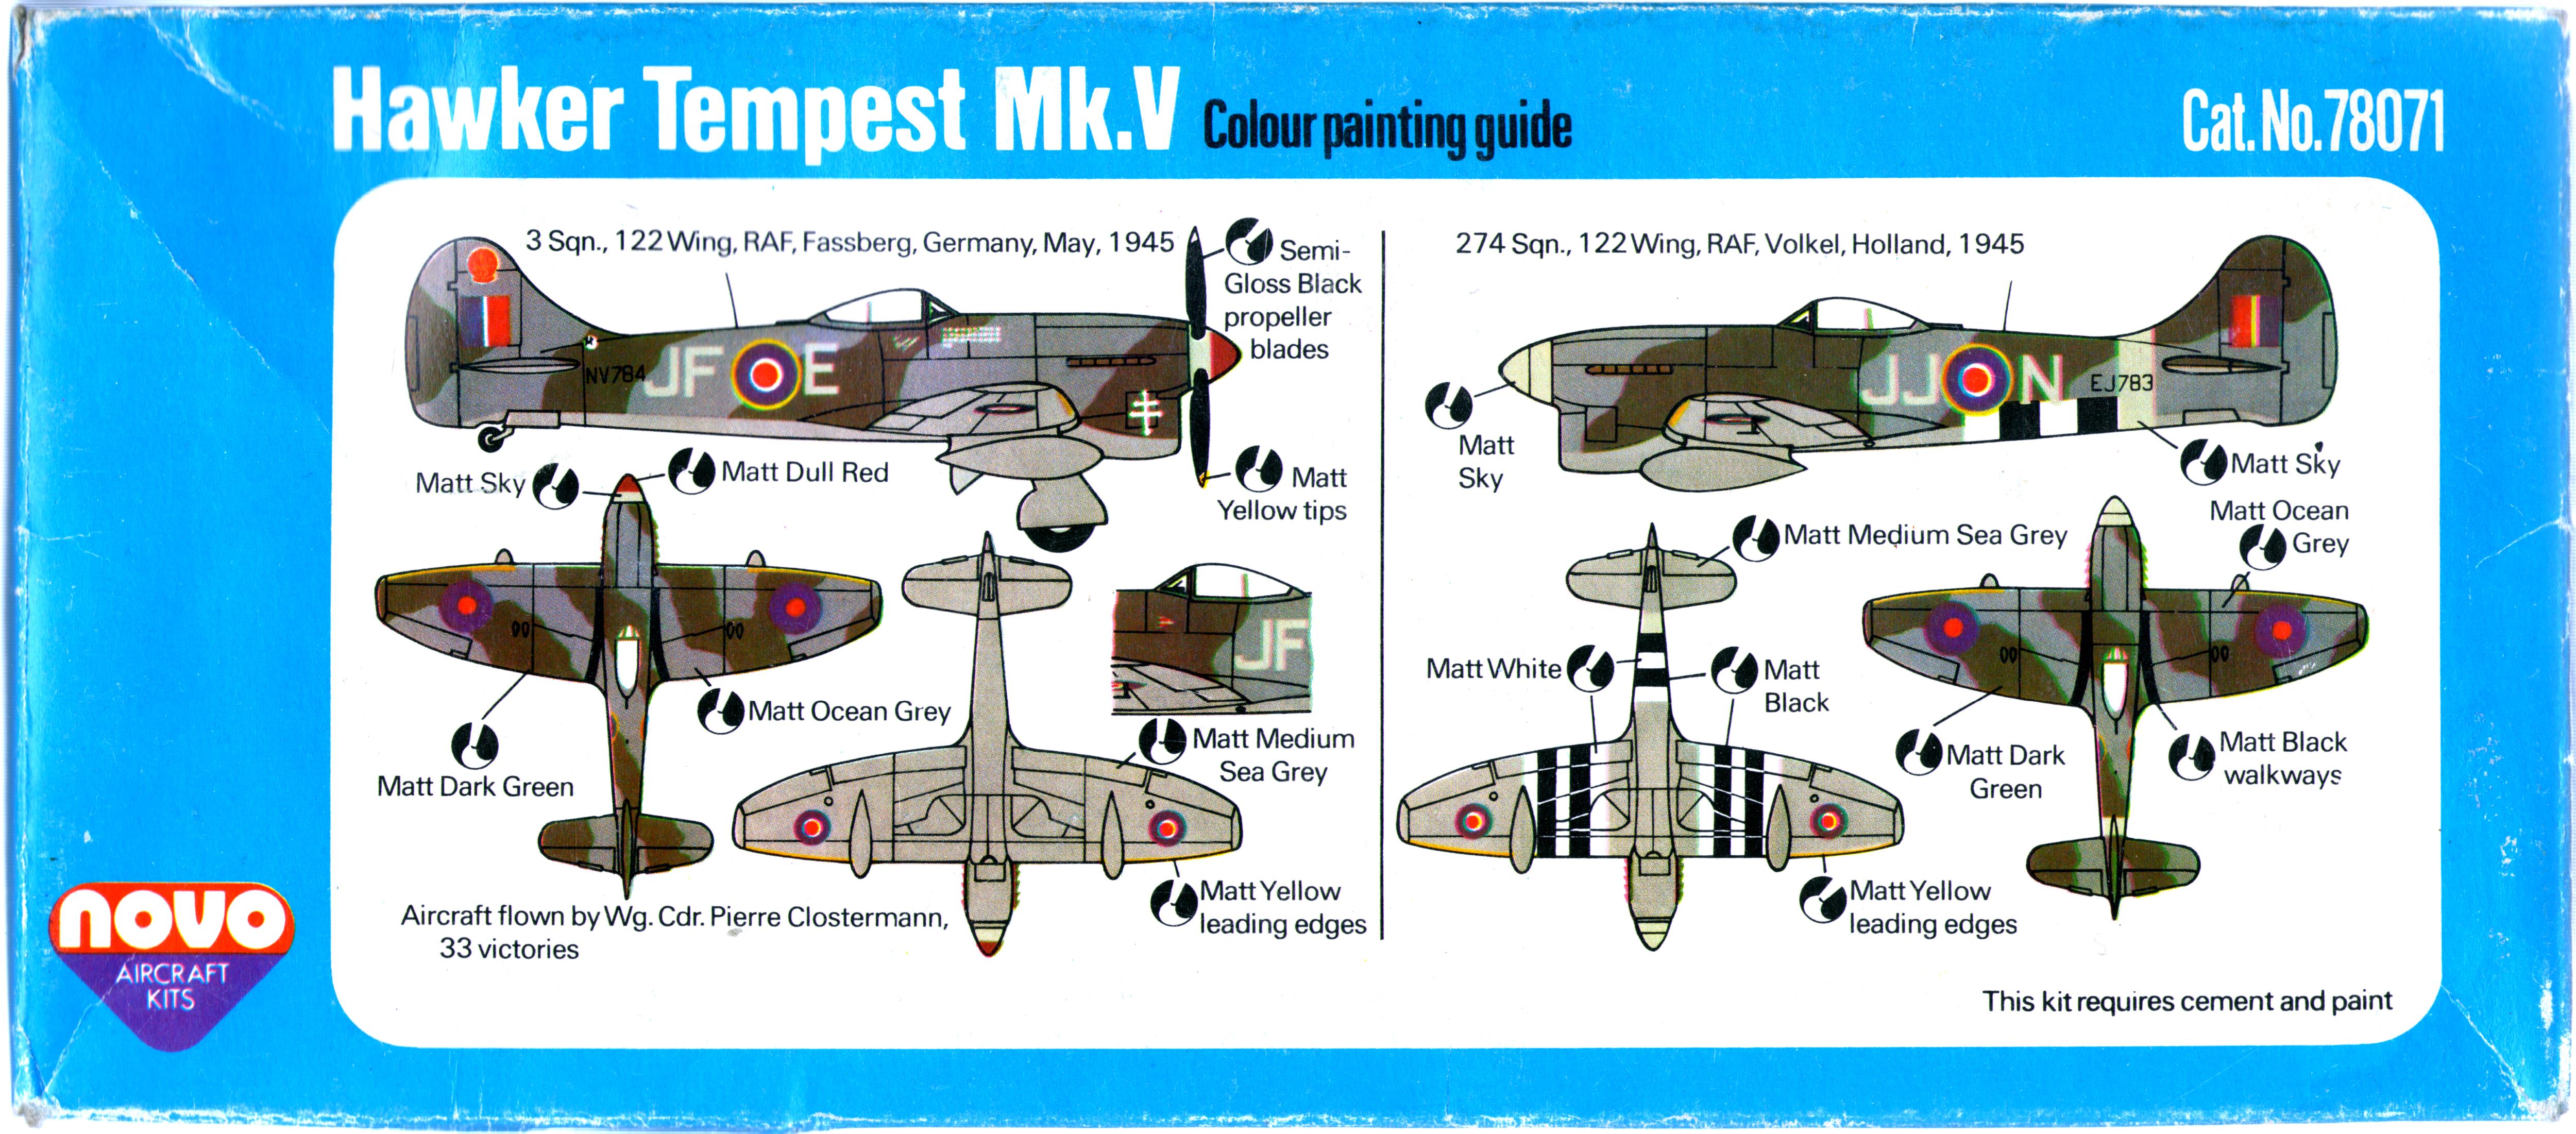 нижняя половина коробки NOVO F212 Hawker Tempest Mk.V с инструкцией по окраске